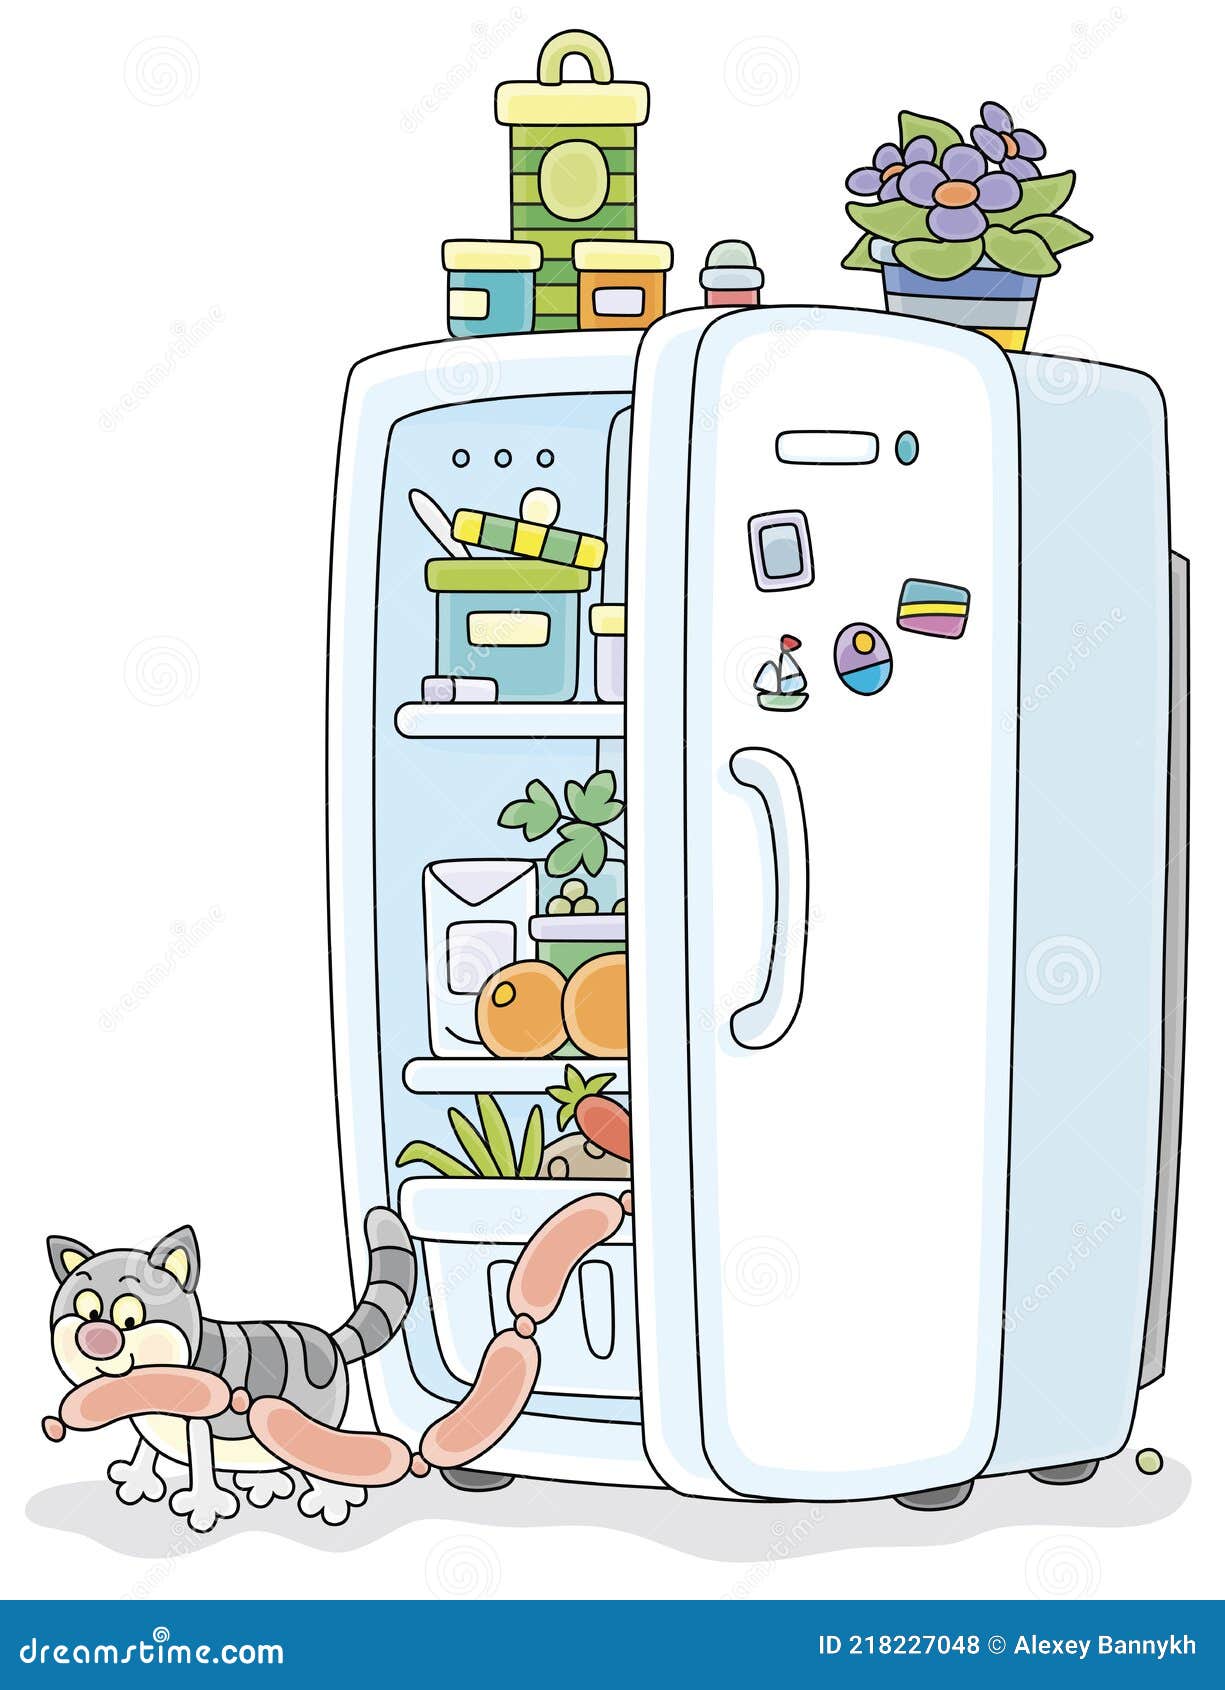 Сосиски в холодильнике рисунок